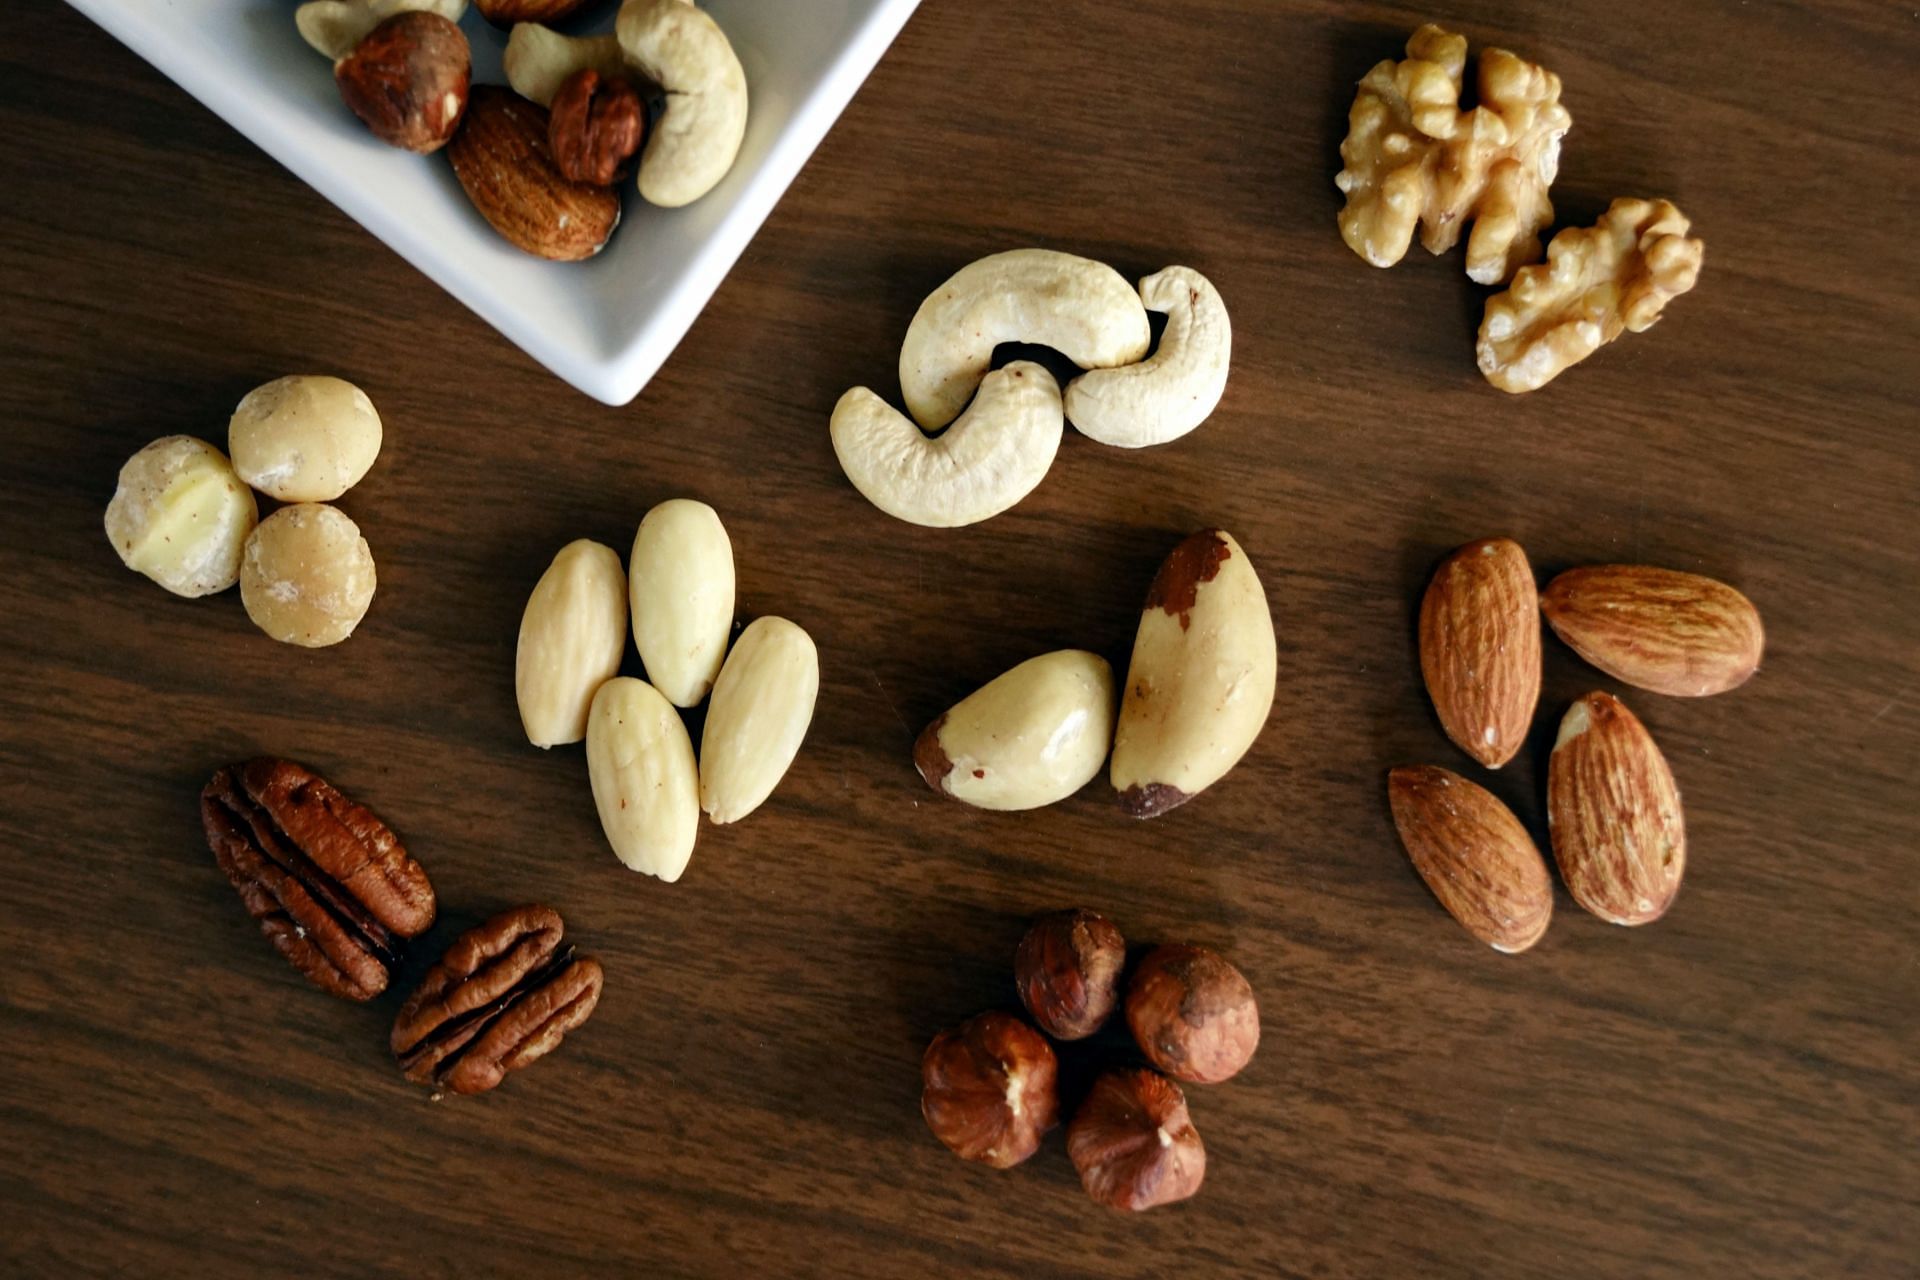 Tree nut allergy (Image via Pexels/Marta)